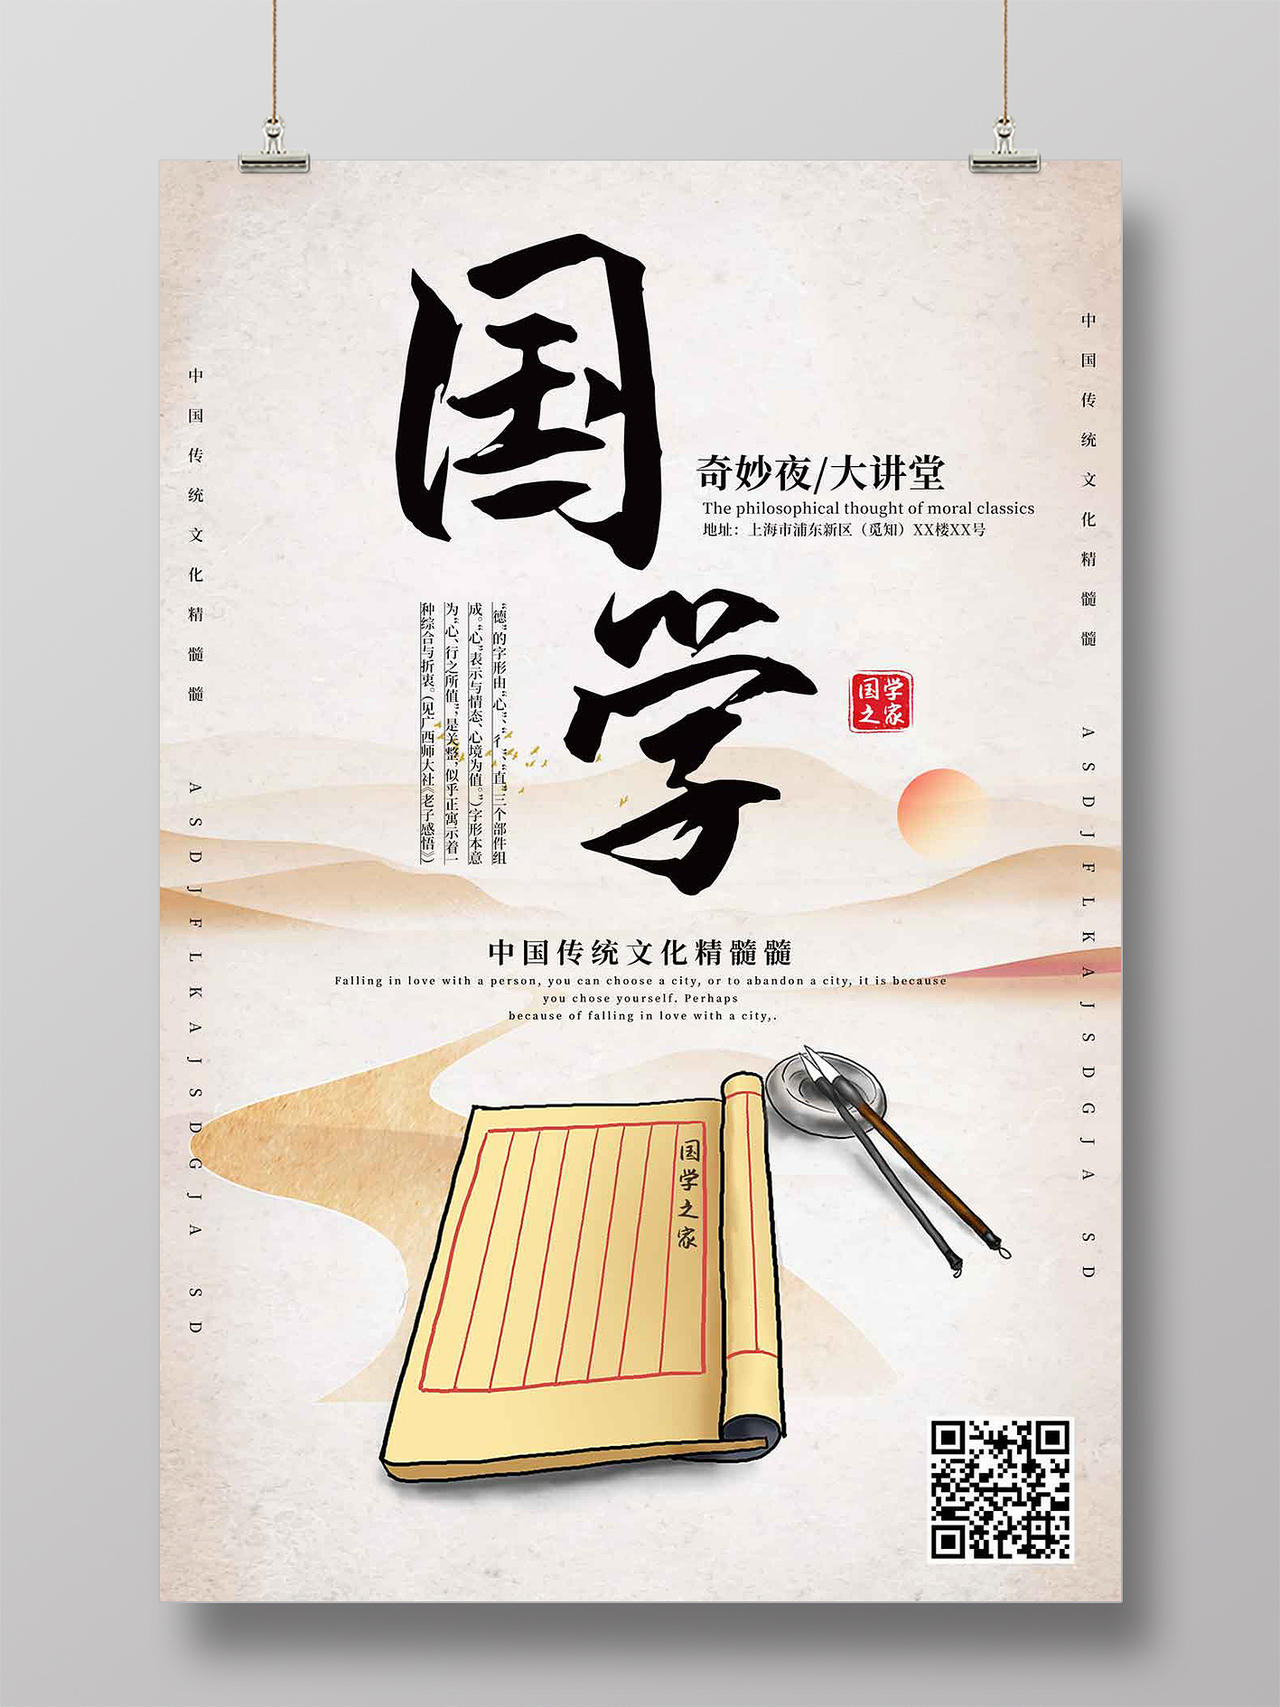 中国传统文化精髓国学之家奇妙夜大讲堂中式国学奇妙讲堂海报